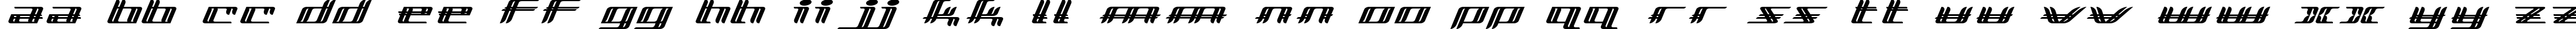 Пример написания английского алфавита шрифтом Lewinsky